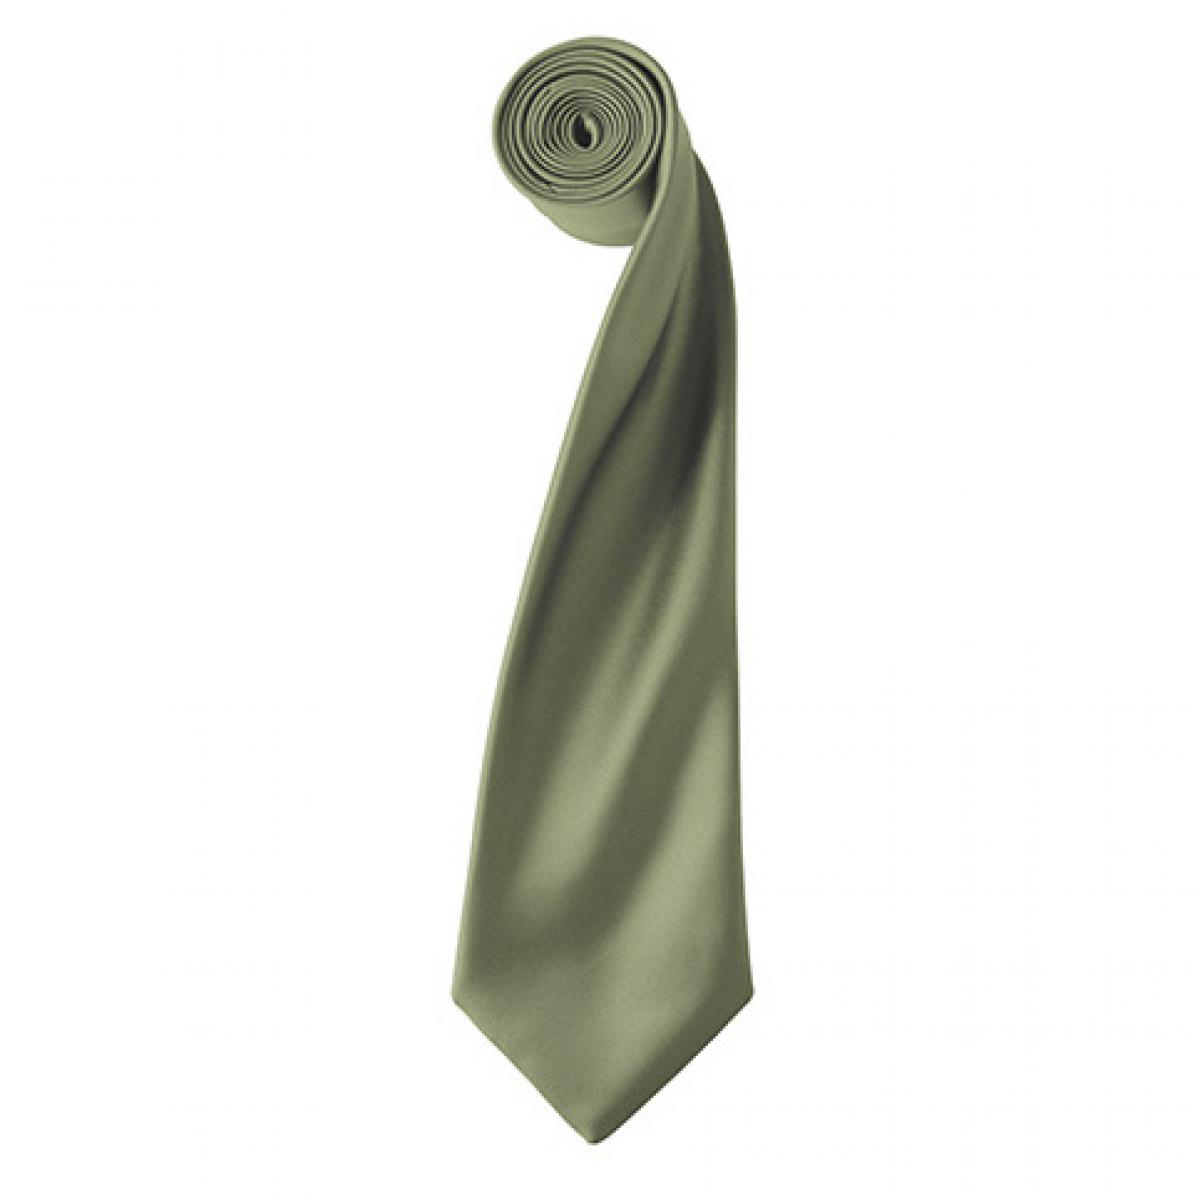 Hersteller: Premier Workwear Herstellernummer: PR750 Artikelbezeichnung: Satin Tie ´Colours´ / 144 x 8,5 cm Farbe: Olive (ca. Pantone 378)